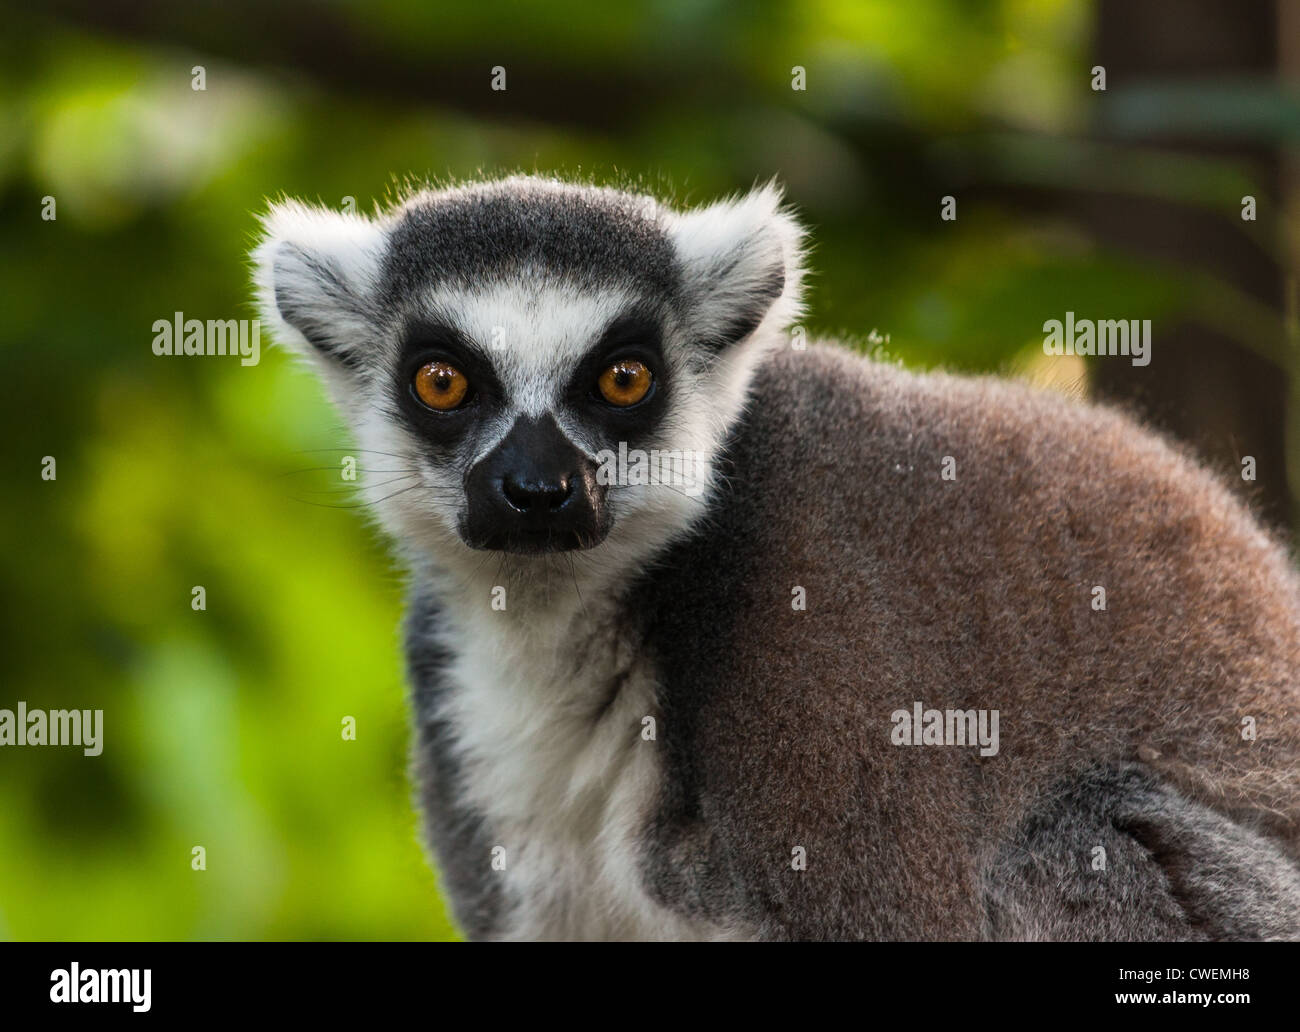 Lemur portrait. Stock Photo